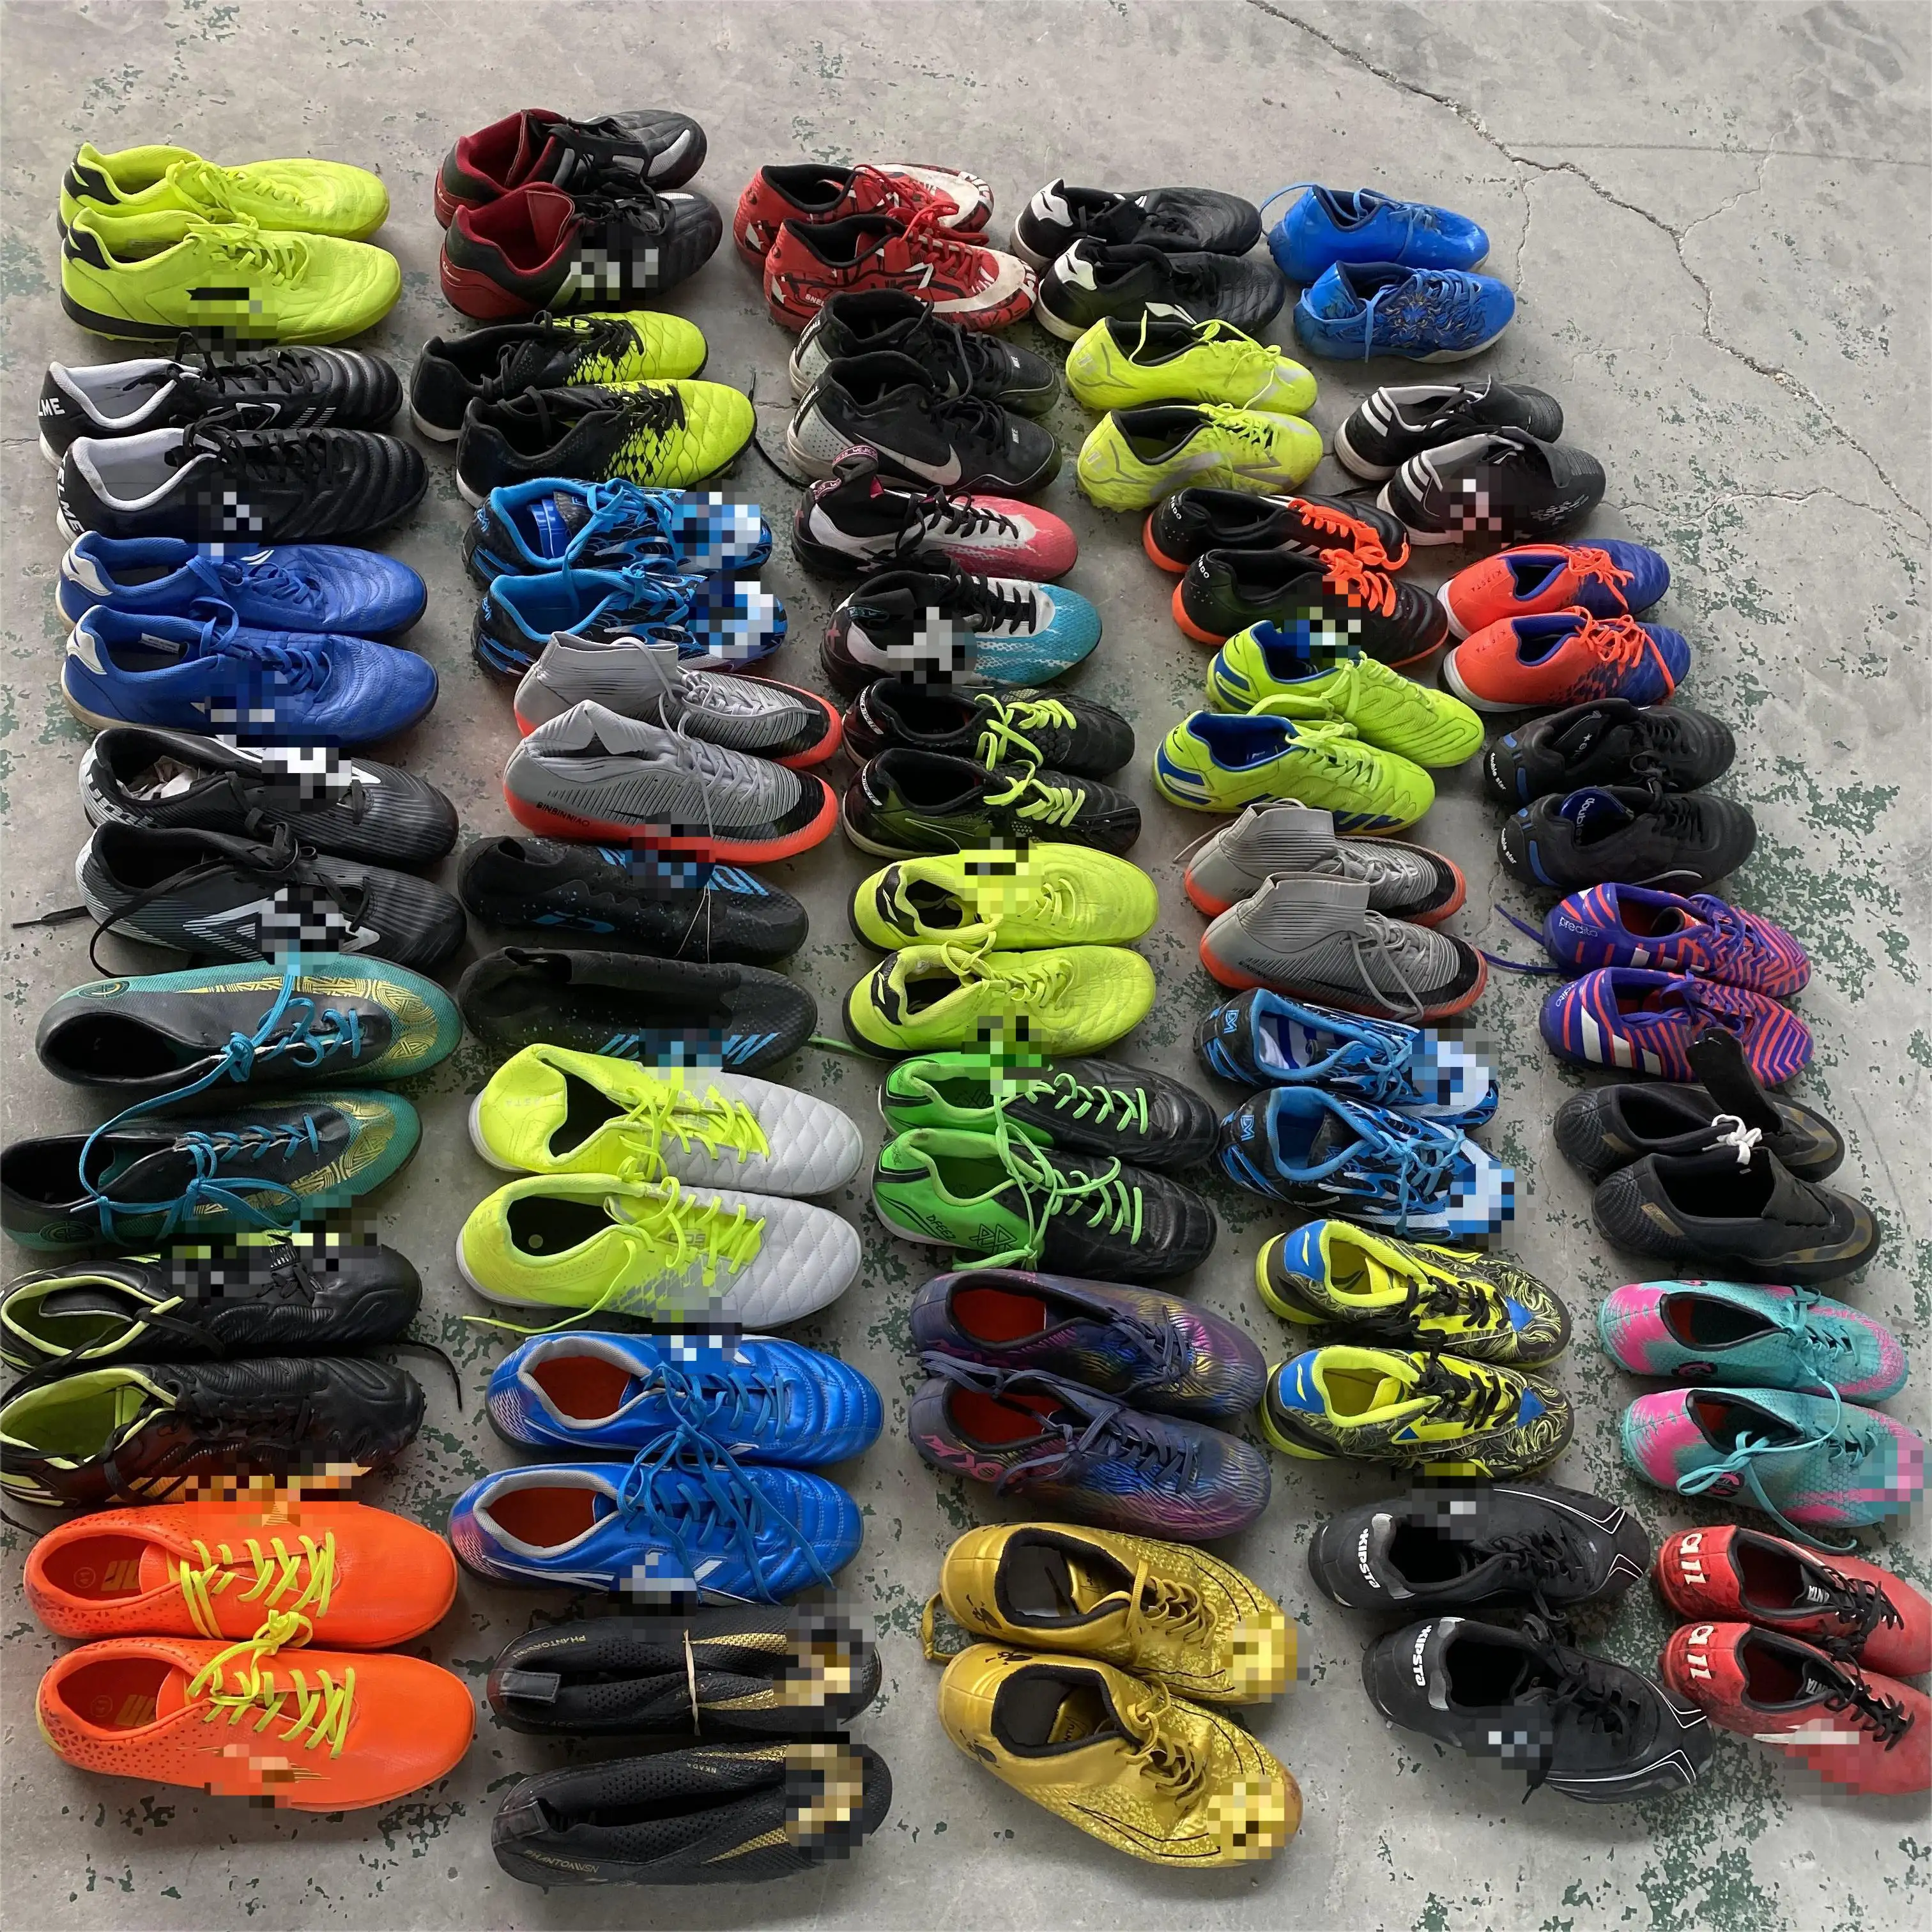 उच्च गुणवत्ता वाले फ़ुटबॉल जूते फ़ुटबॉल में प्रयुक्त सेकेंड हैंड फ़ुटबॉल जूते, प्रयुक्त फ़ुटबॉल जूते, मूल रूप से प्रयुक्त